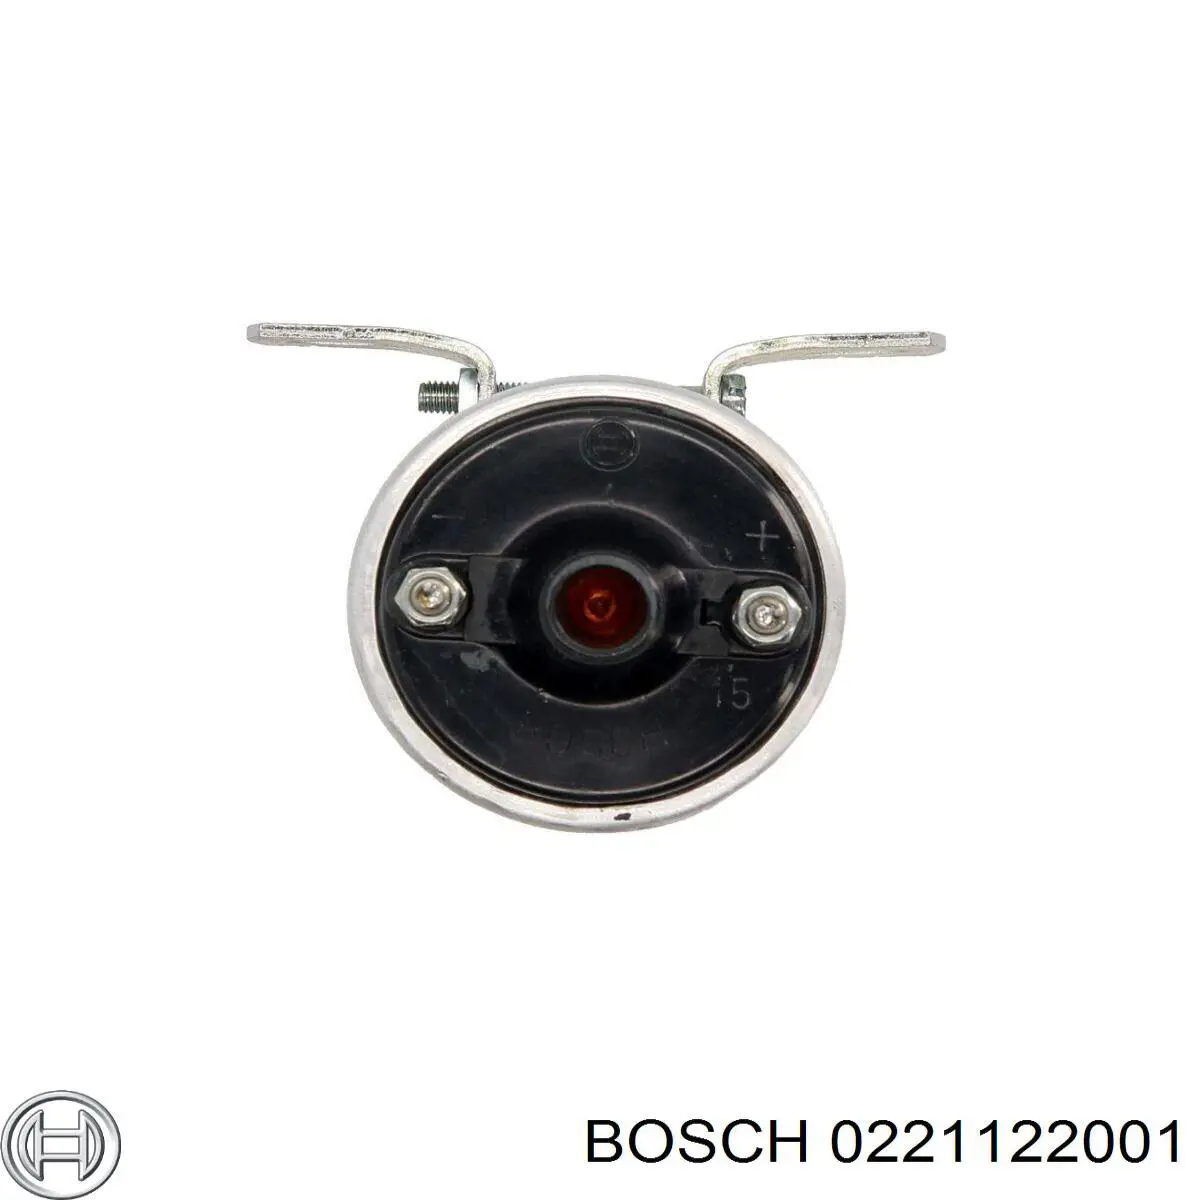 0221122001 Bosch módulo de encendido